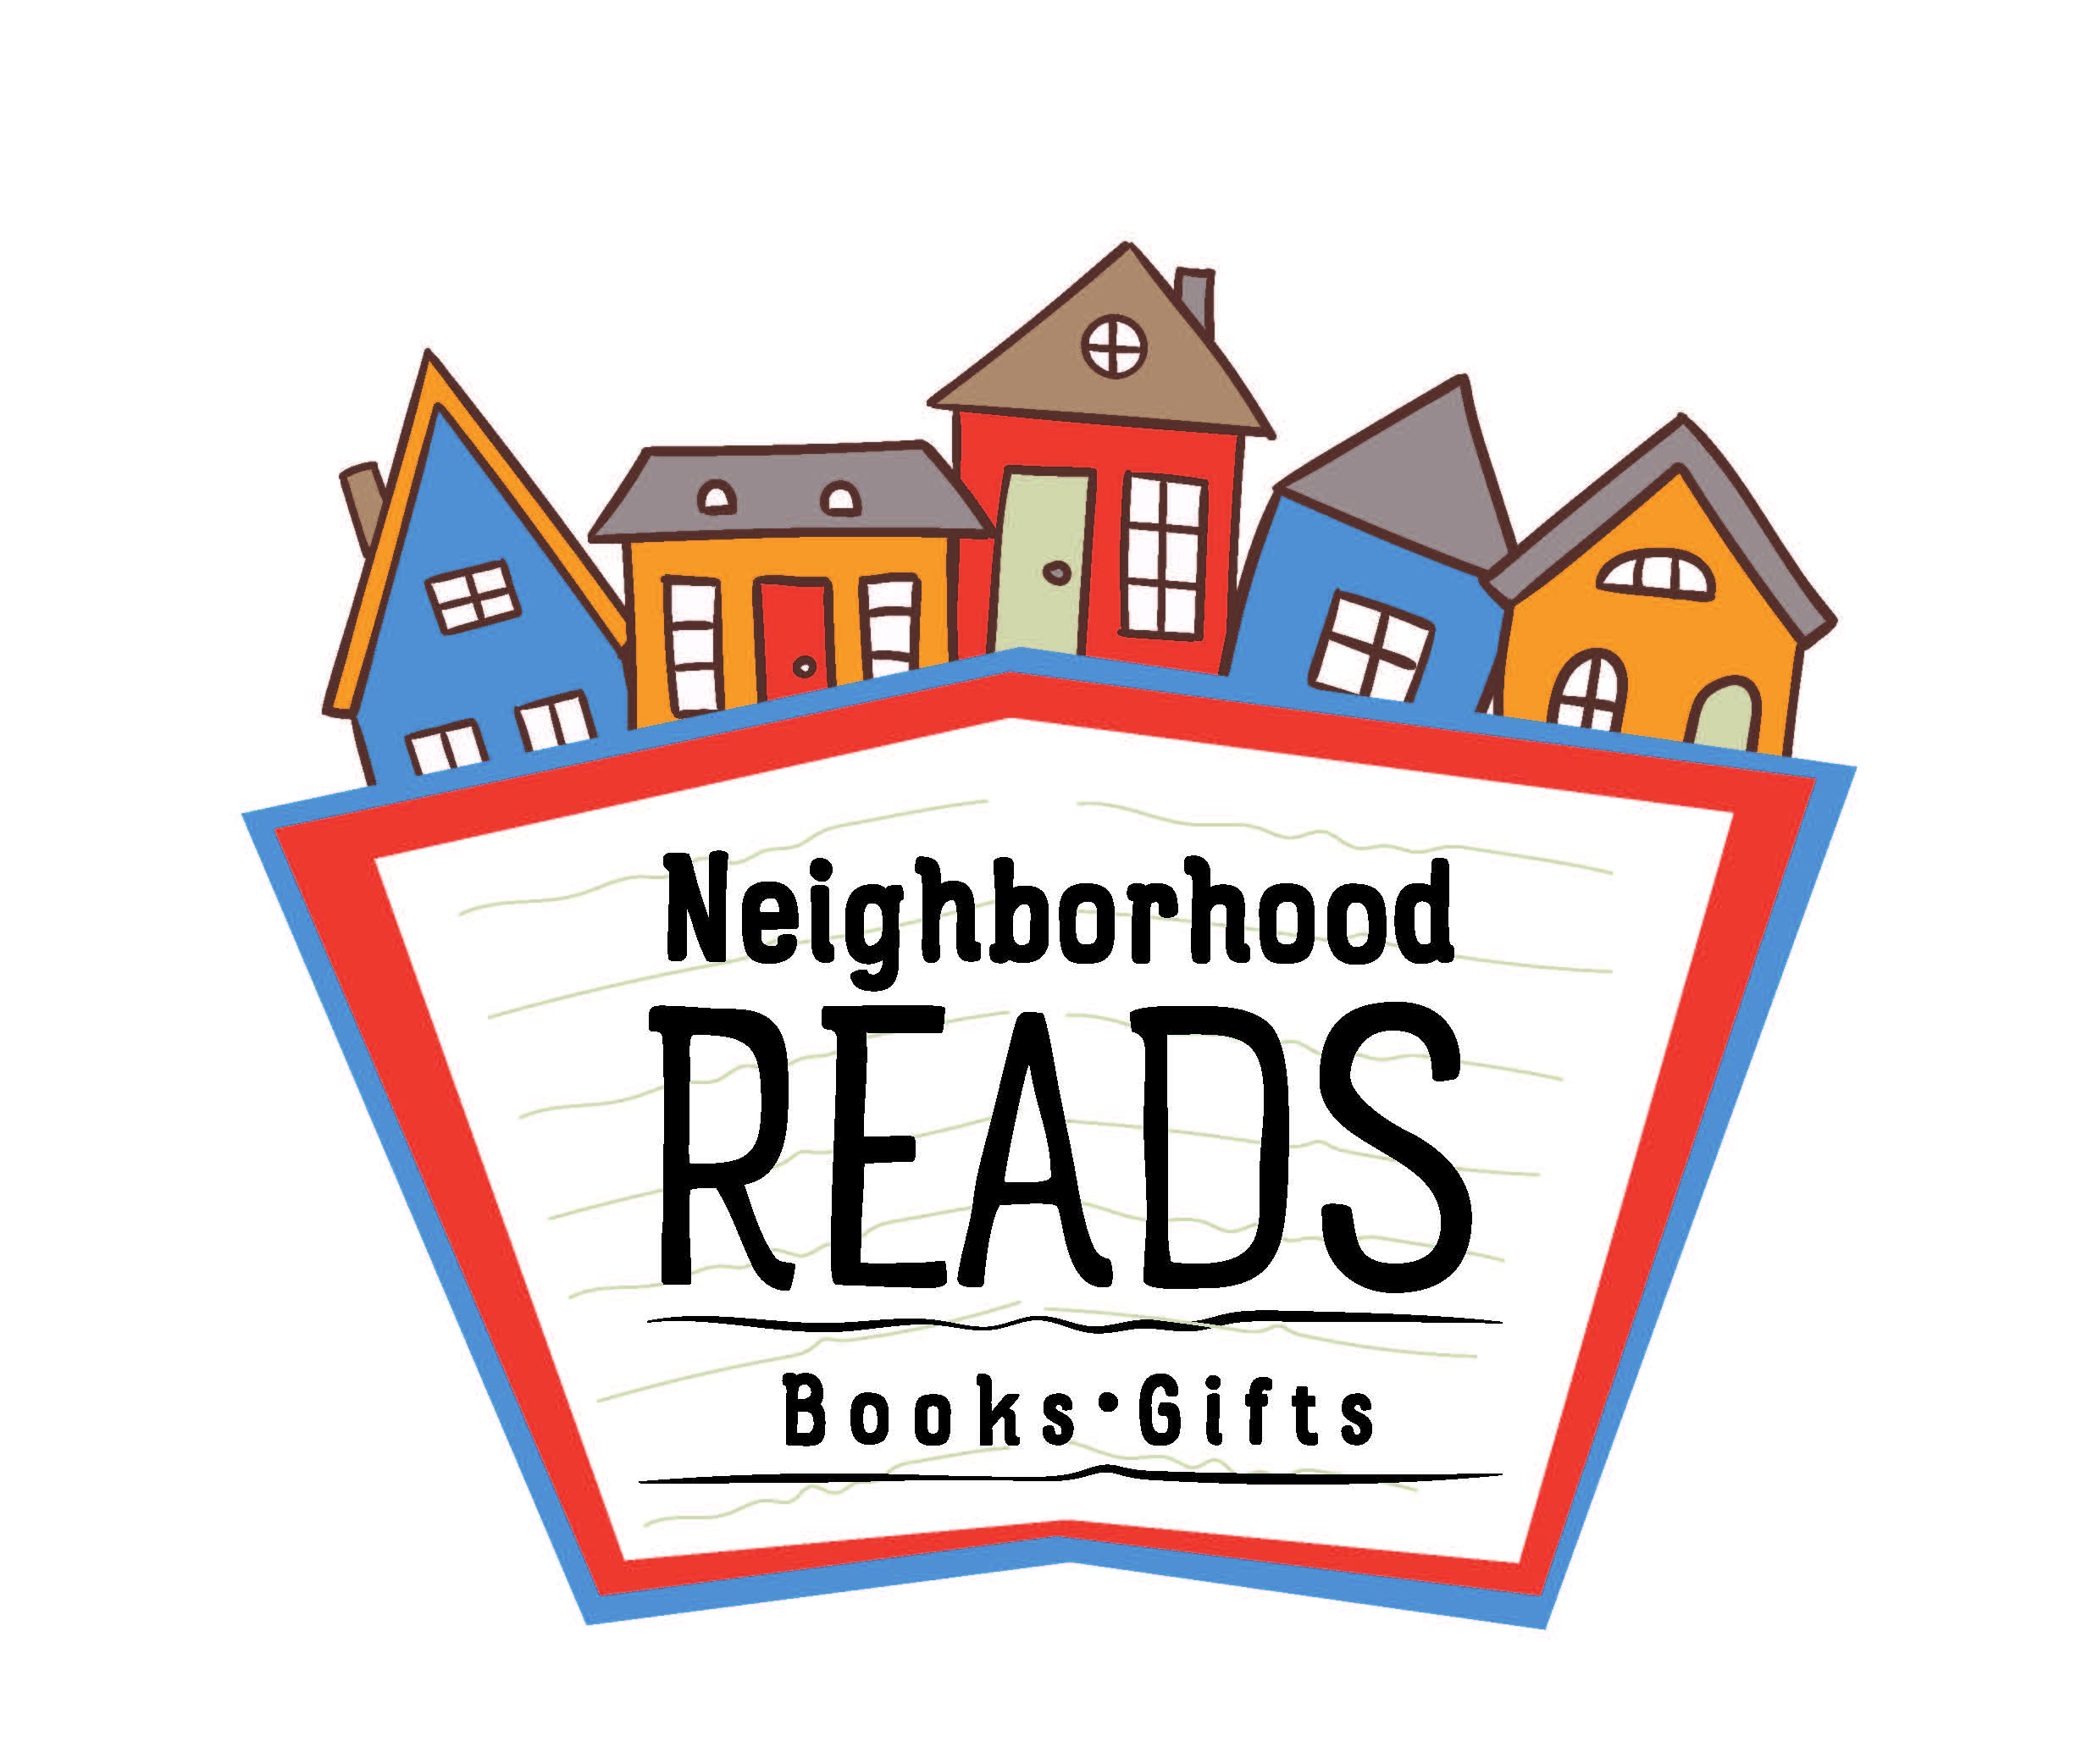 Neighborhood Reads Bookstore